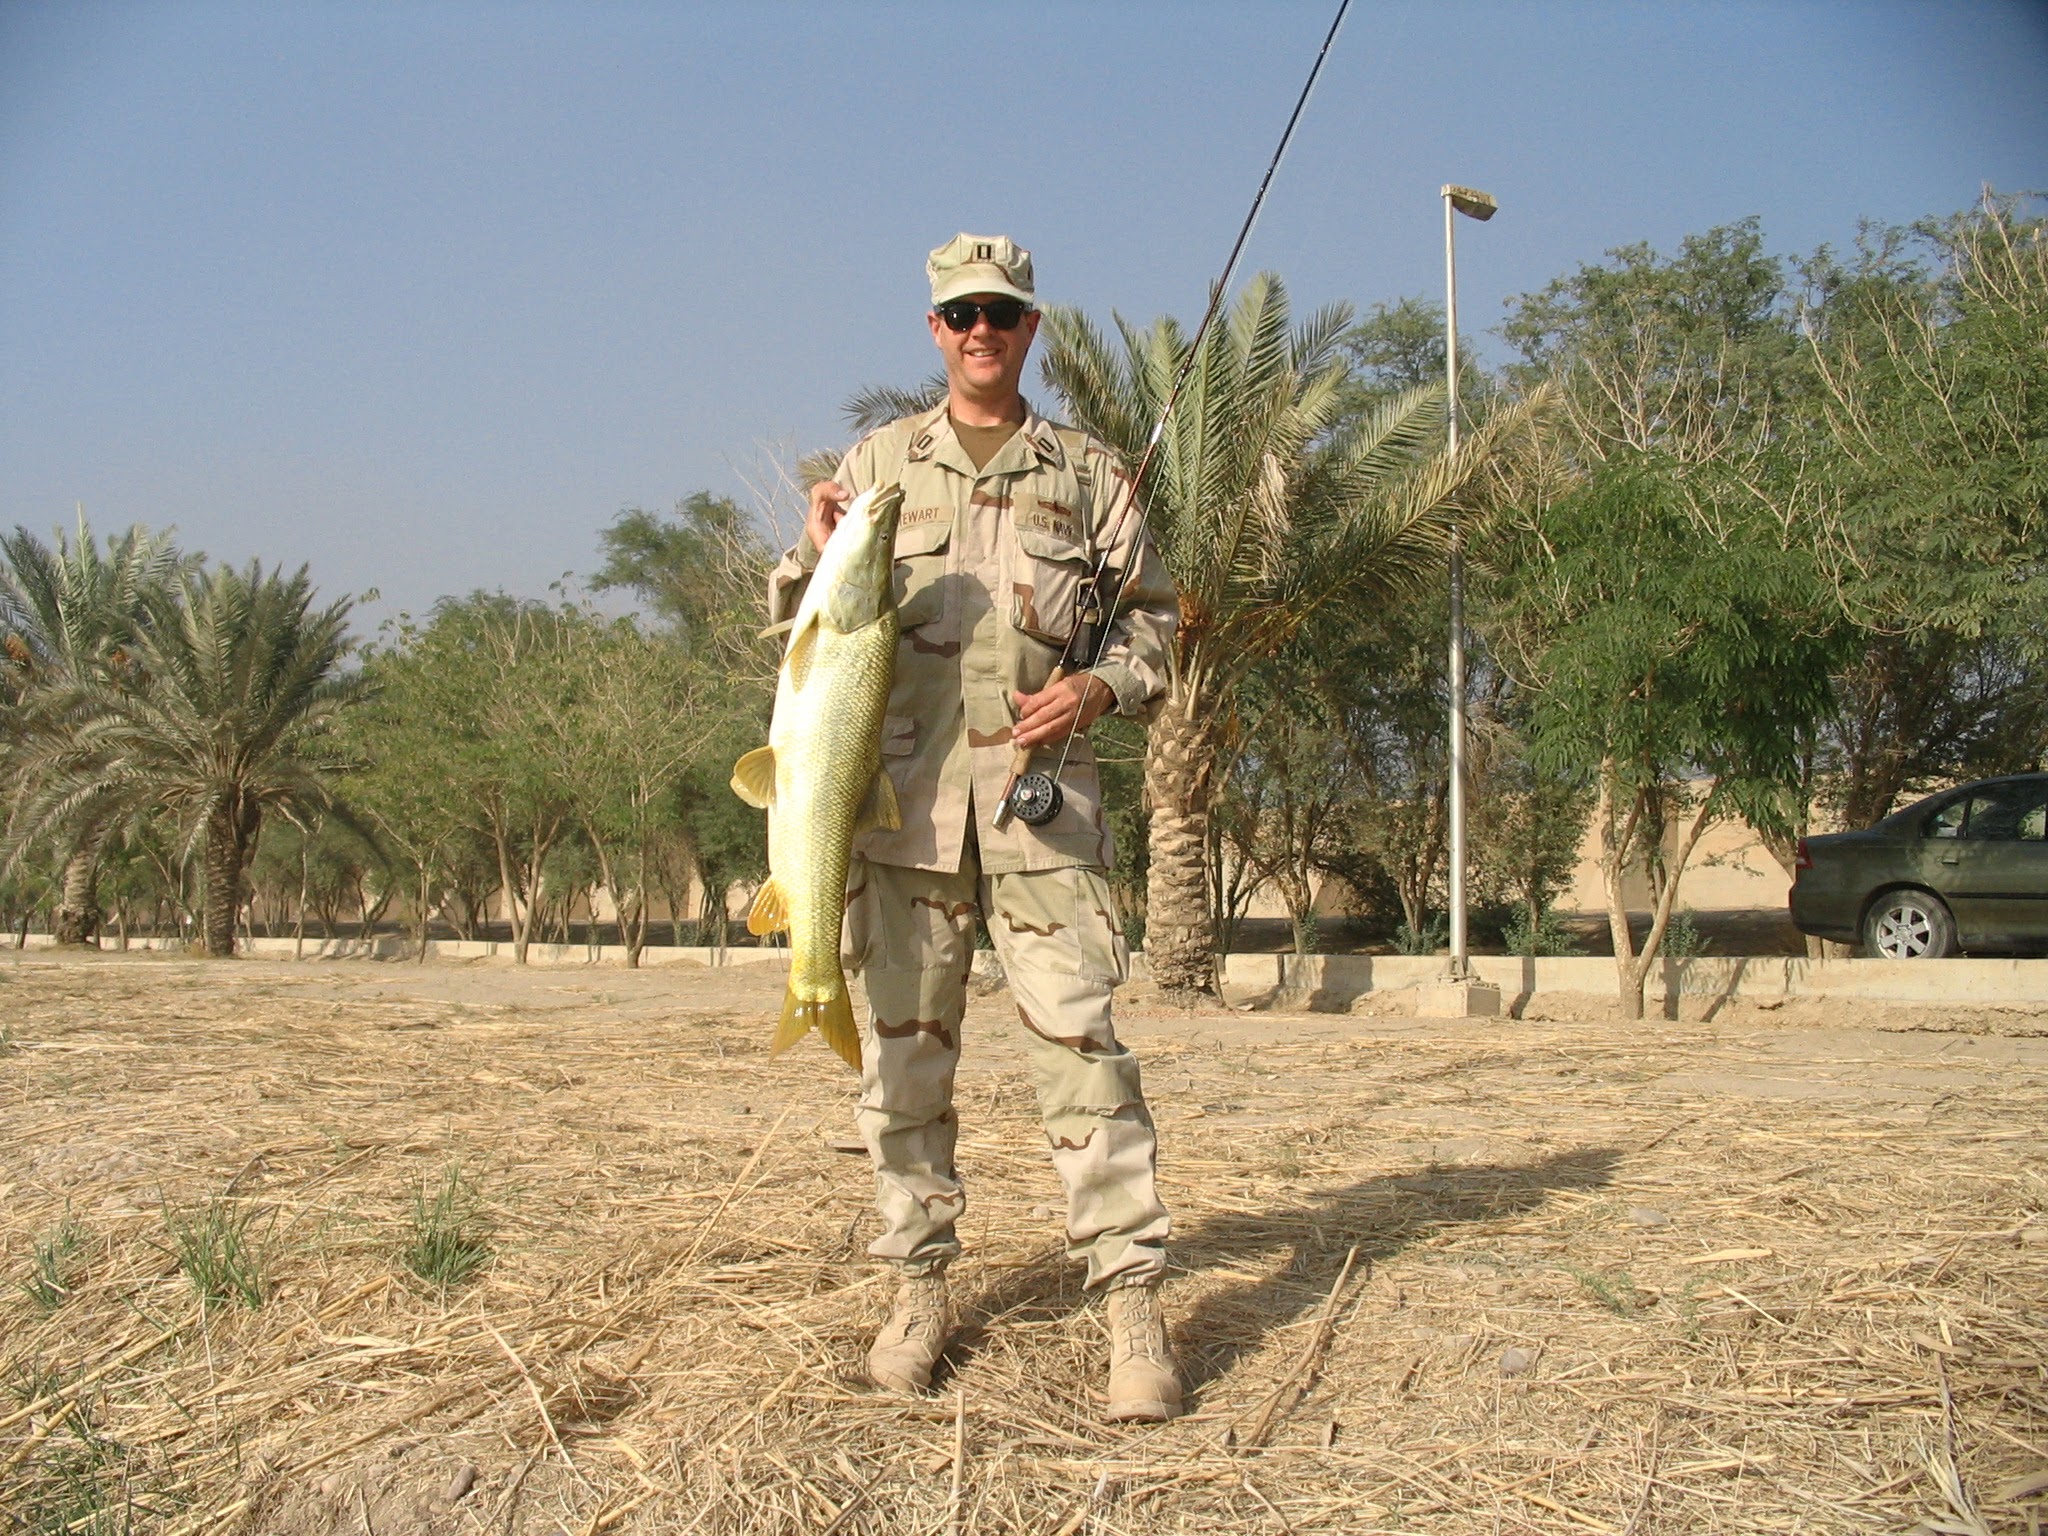 Joel Stewart Baghdad School of Fly Fishing Free Range American